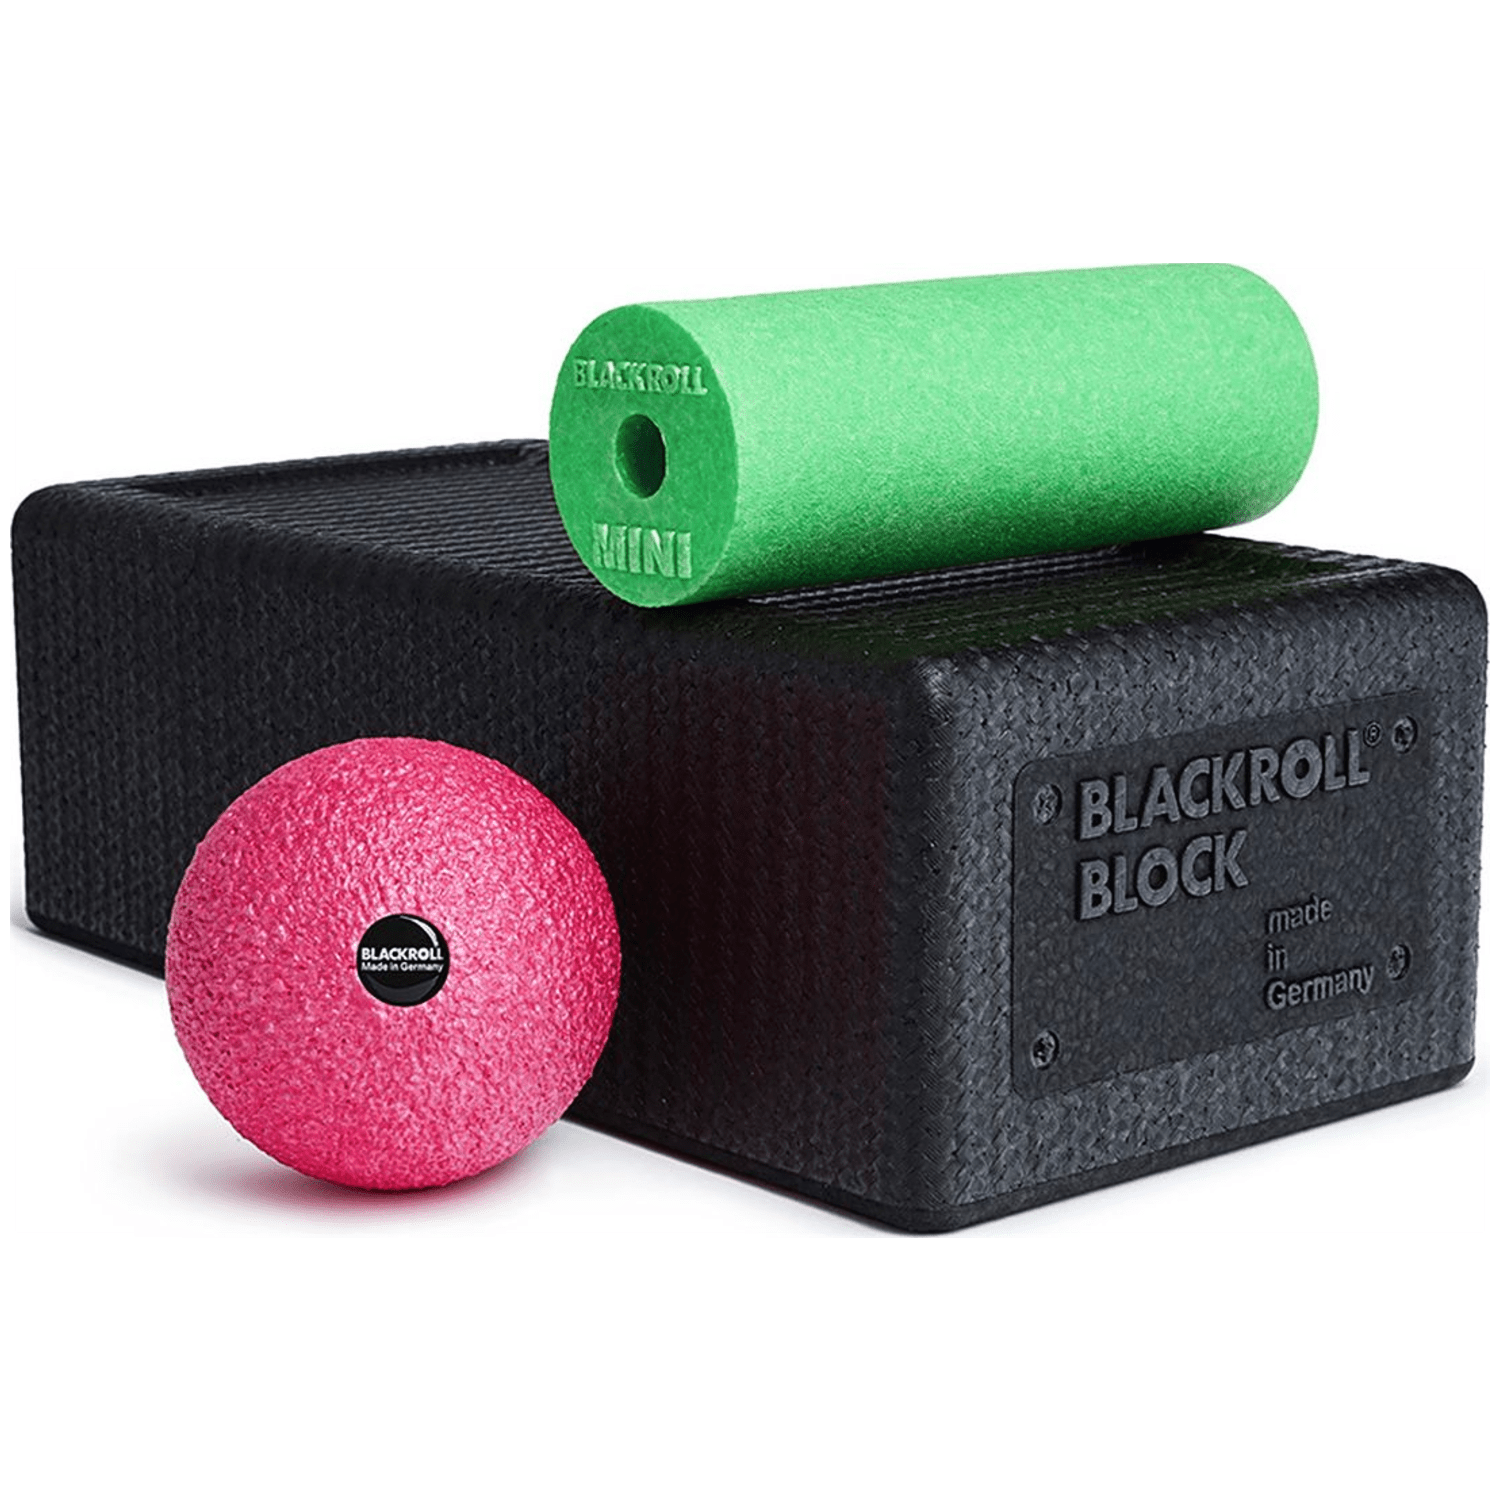 Blackroll Block Set Unisex Fitnessgerät